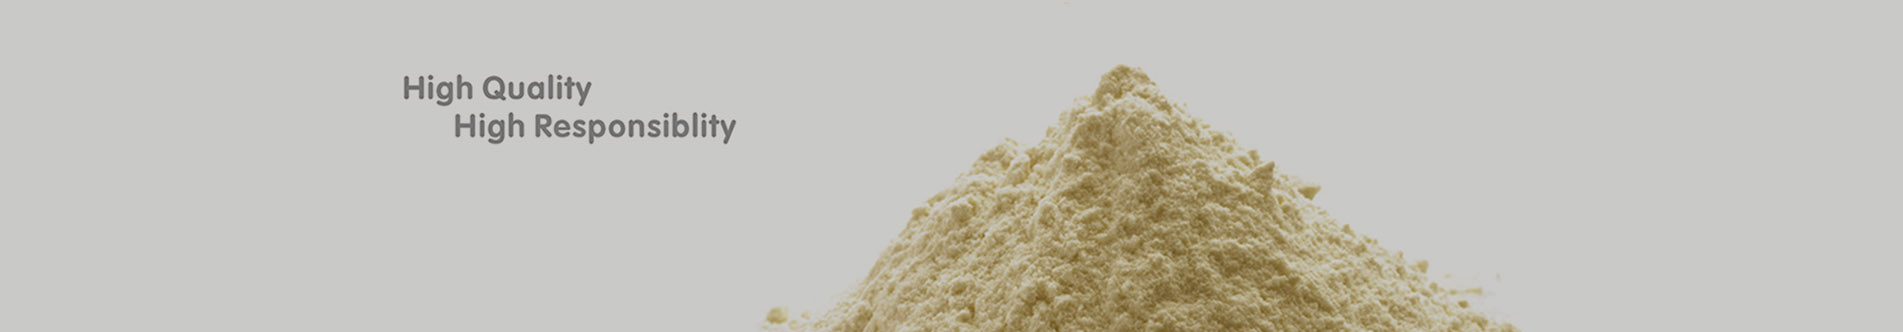 ε-Polylysine Powder/CAS 25104-18-1